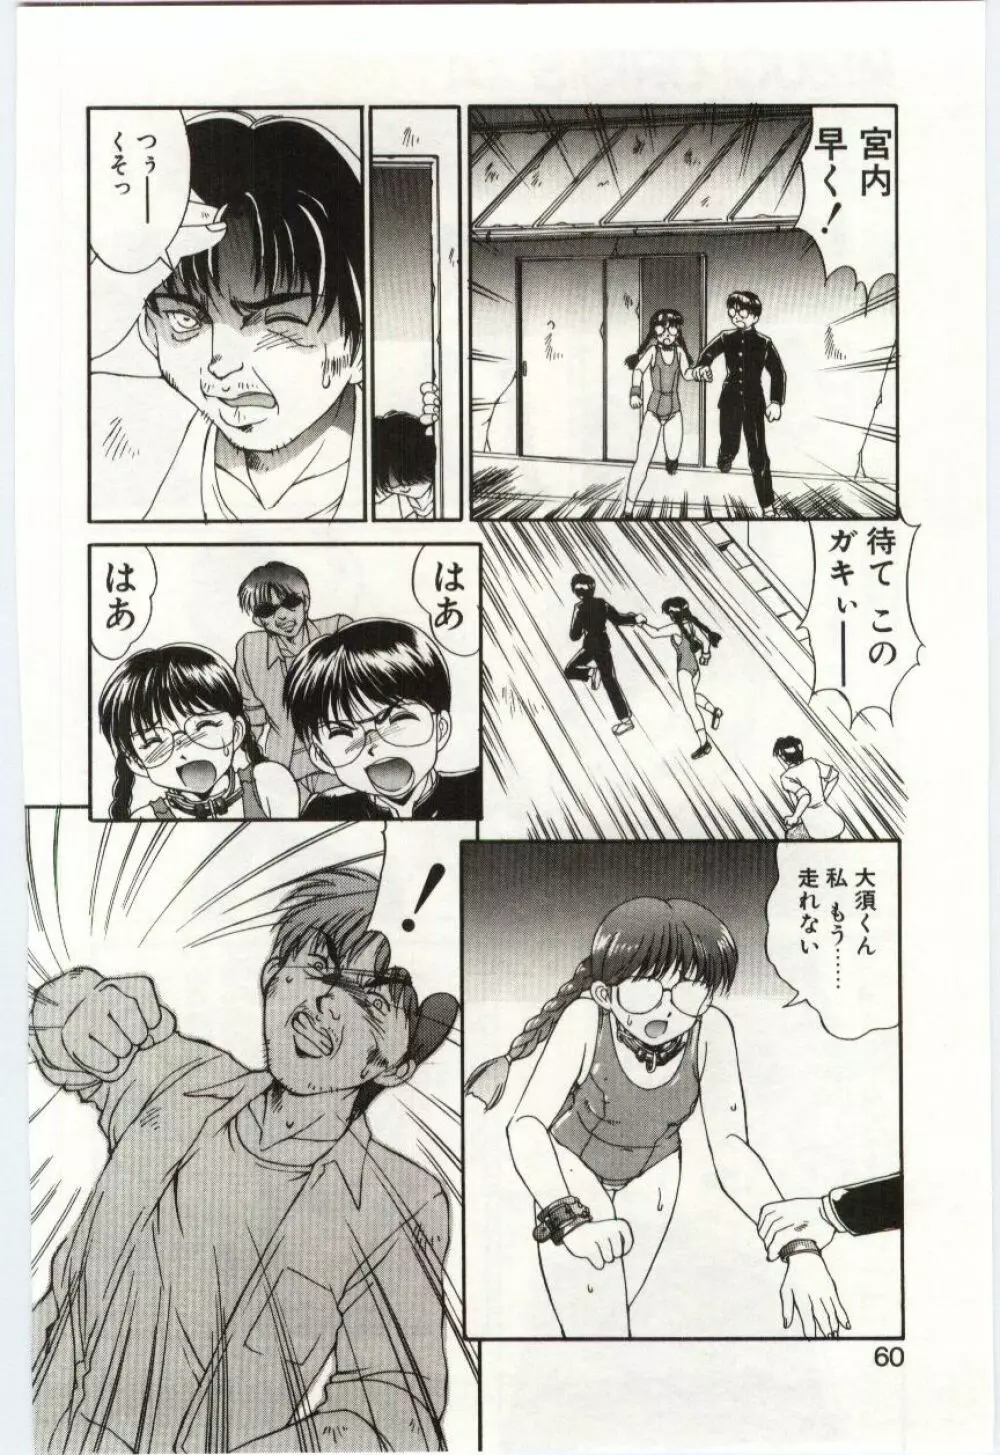 Mizugi Crisis part 1 - JP Page.59